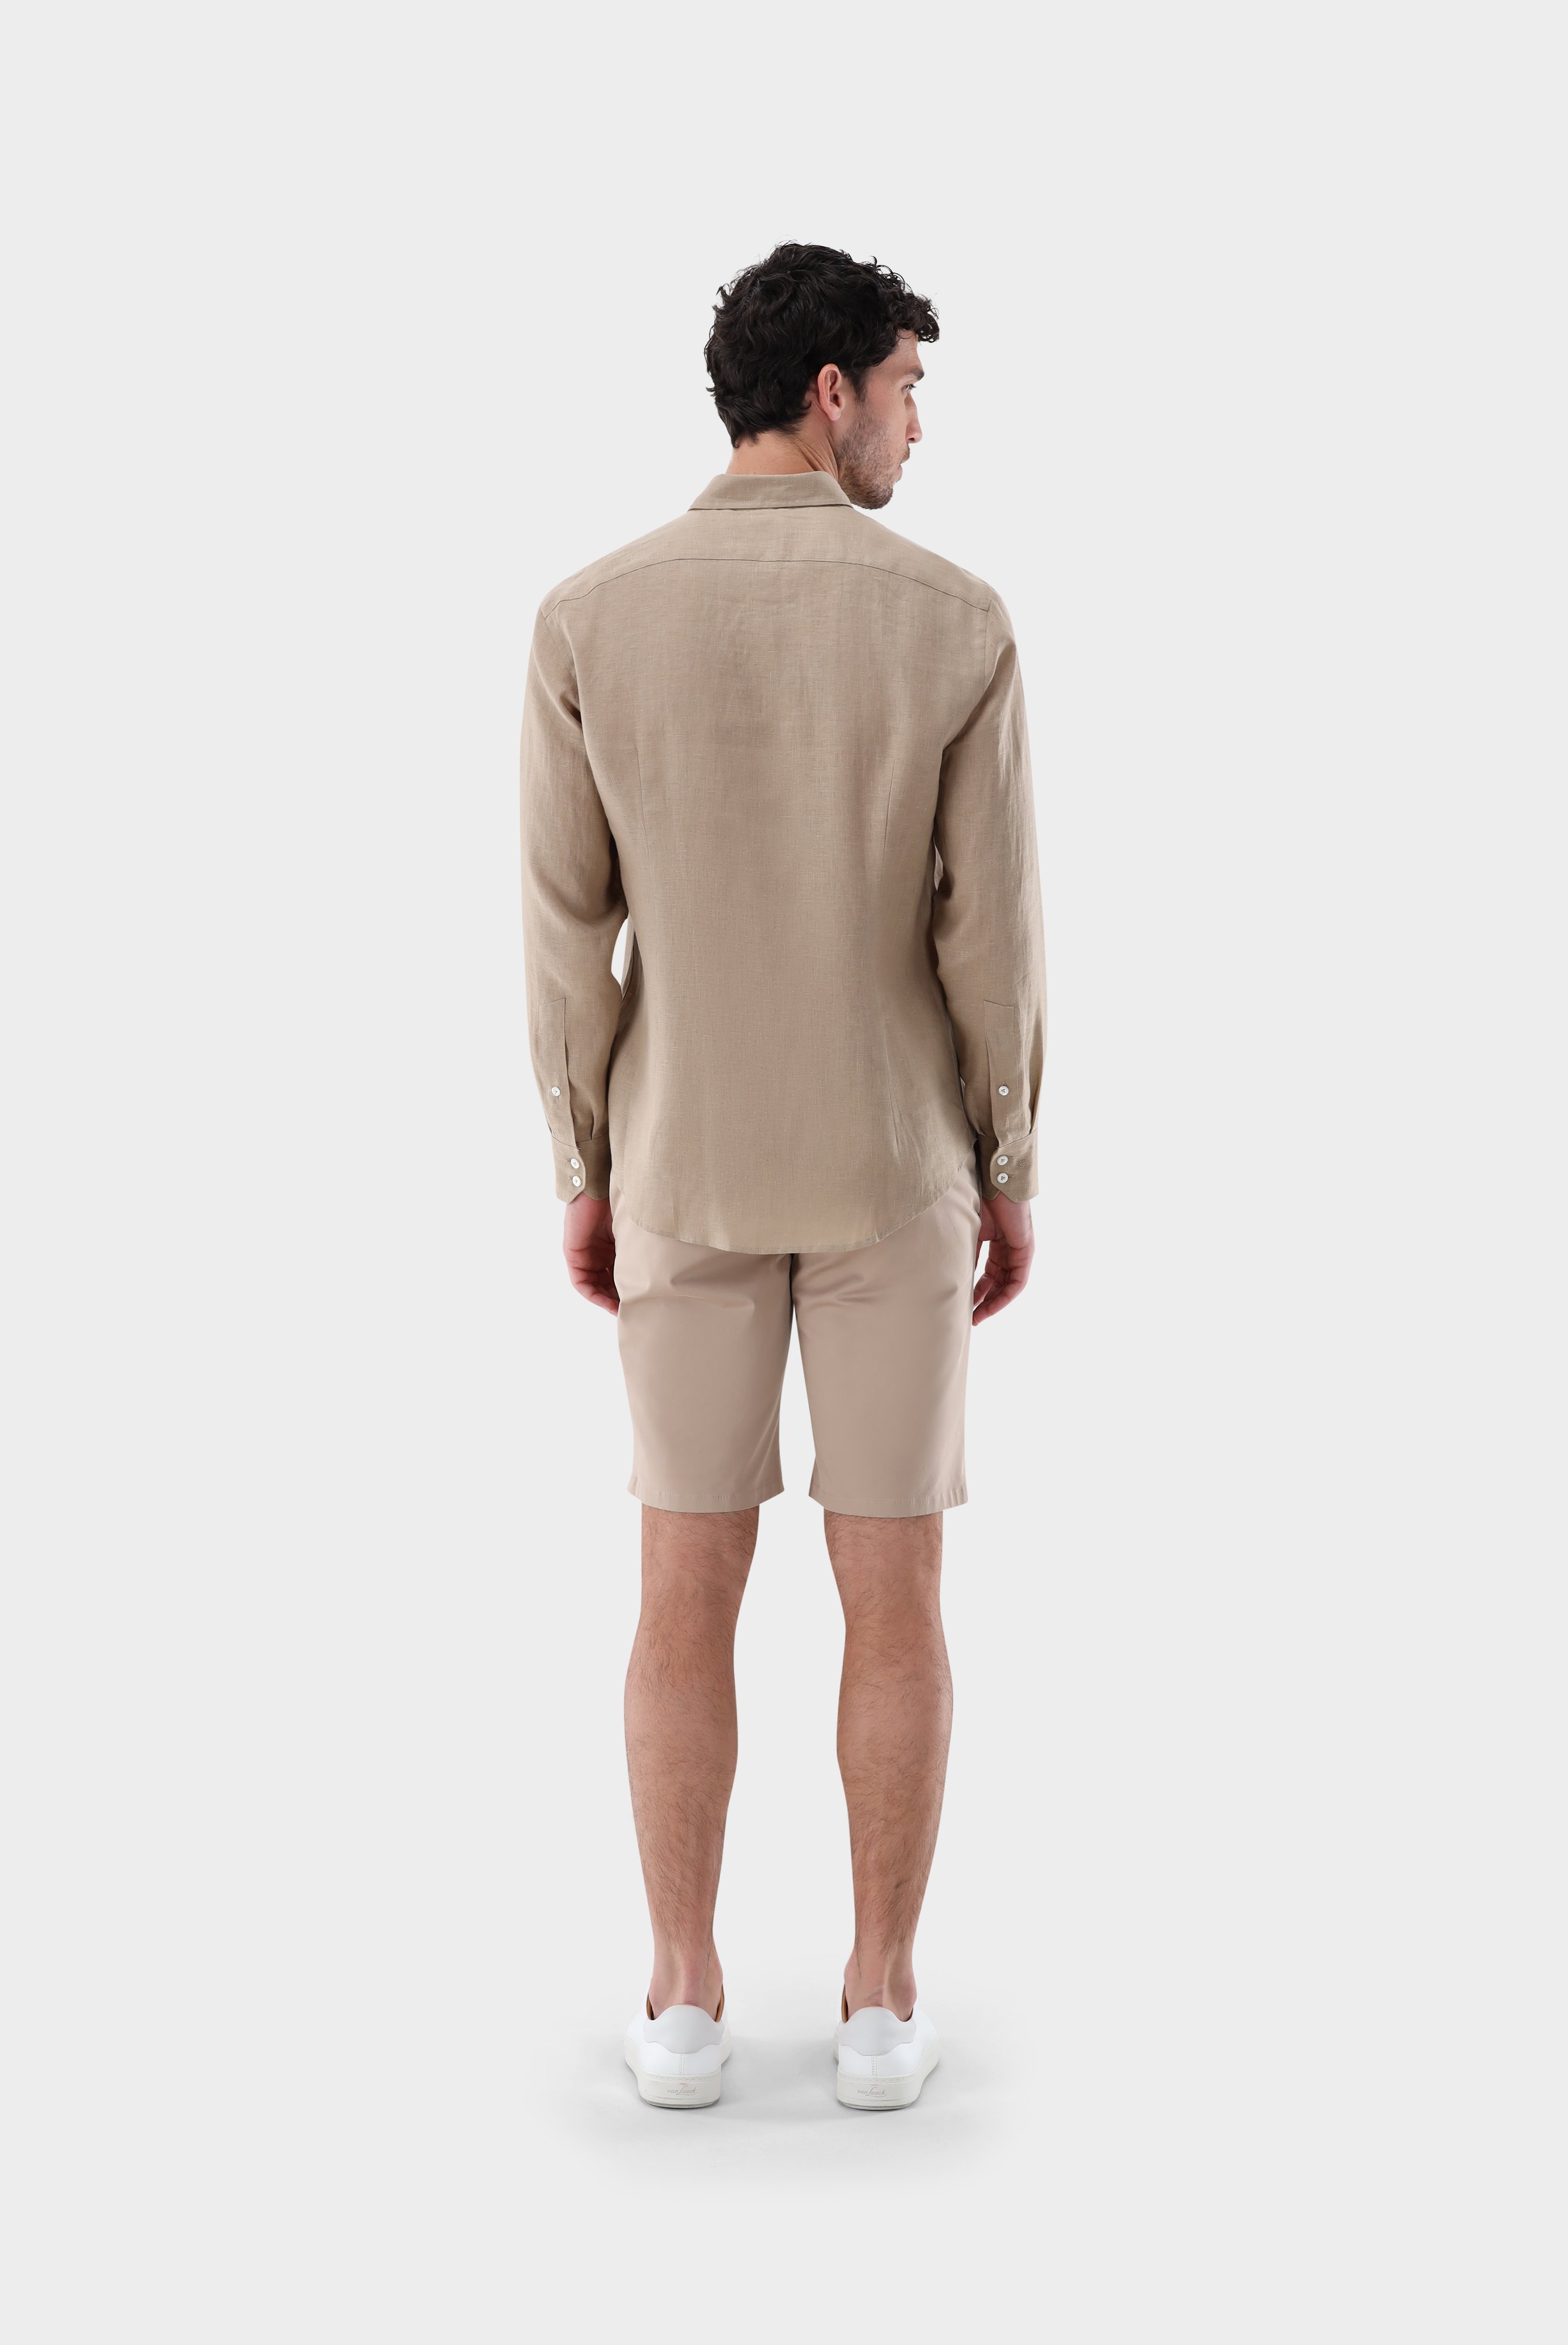 Casual Hemden+Leinenhemd mit Button-Down Kragen Tailor Fit+20.2013.9V.150555.130.41